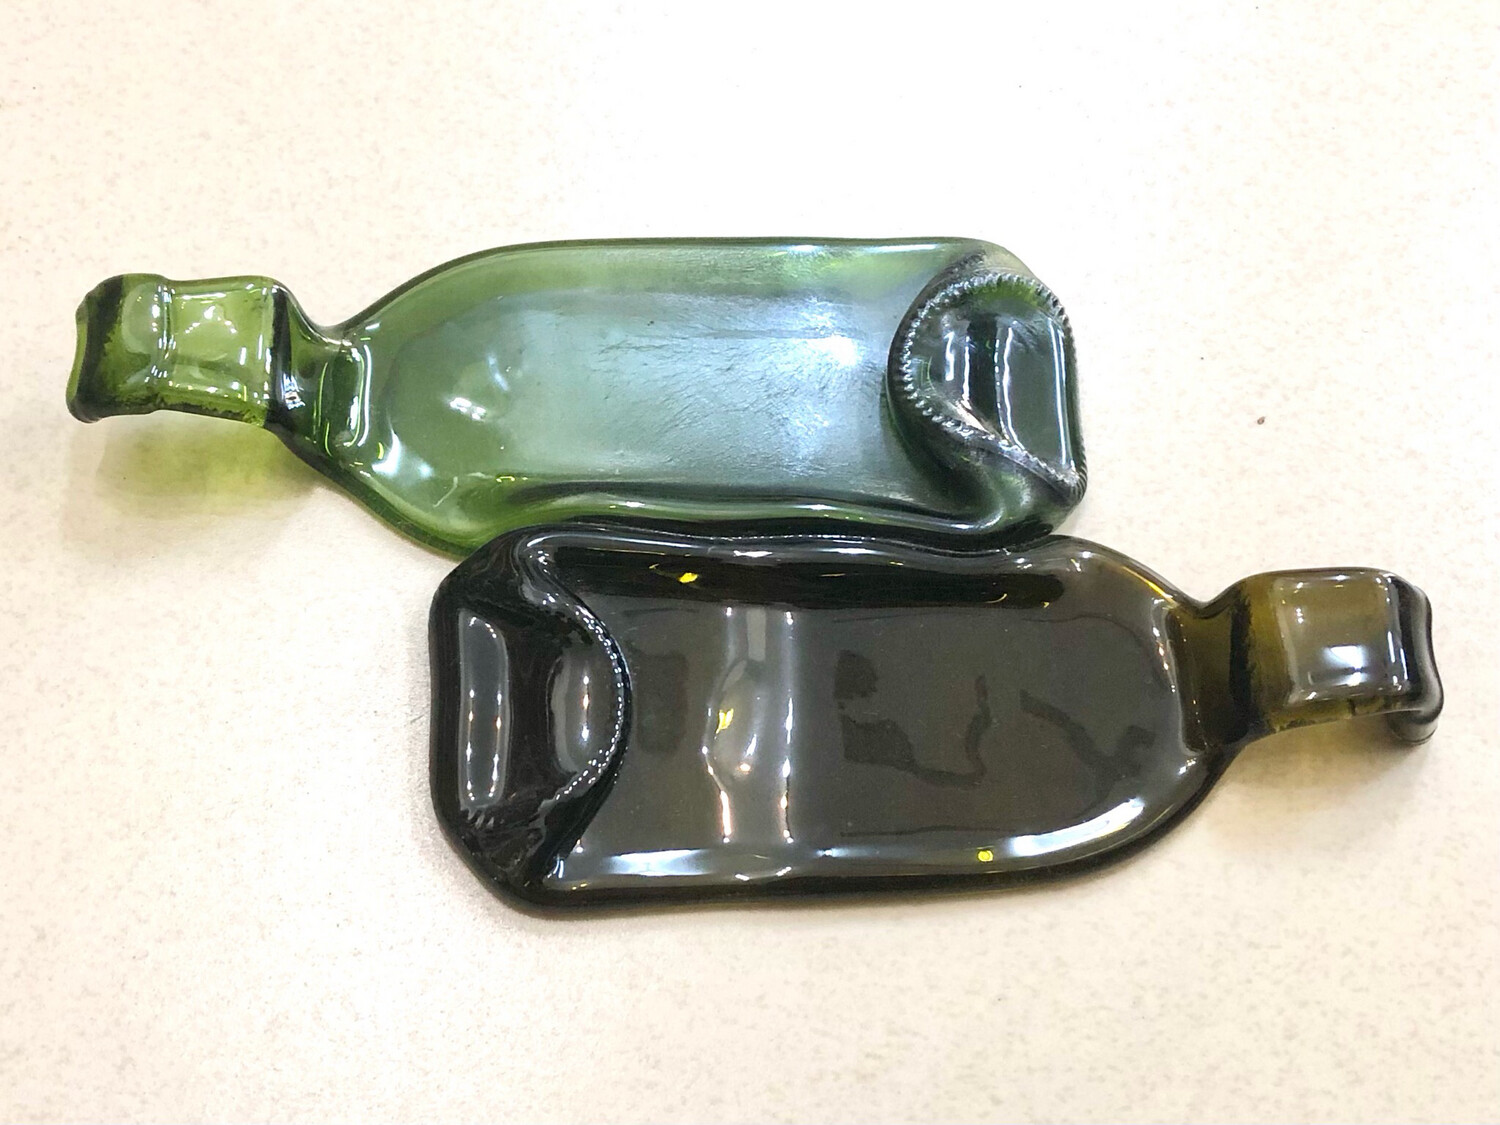 2 Bottles- Green & Brown / ٢ زجاجة - خضراء و بنية